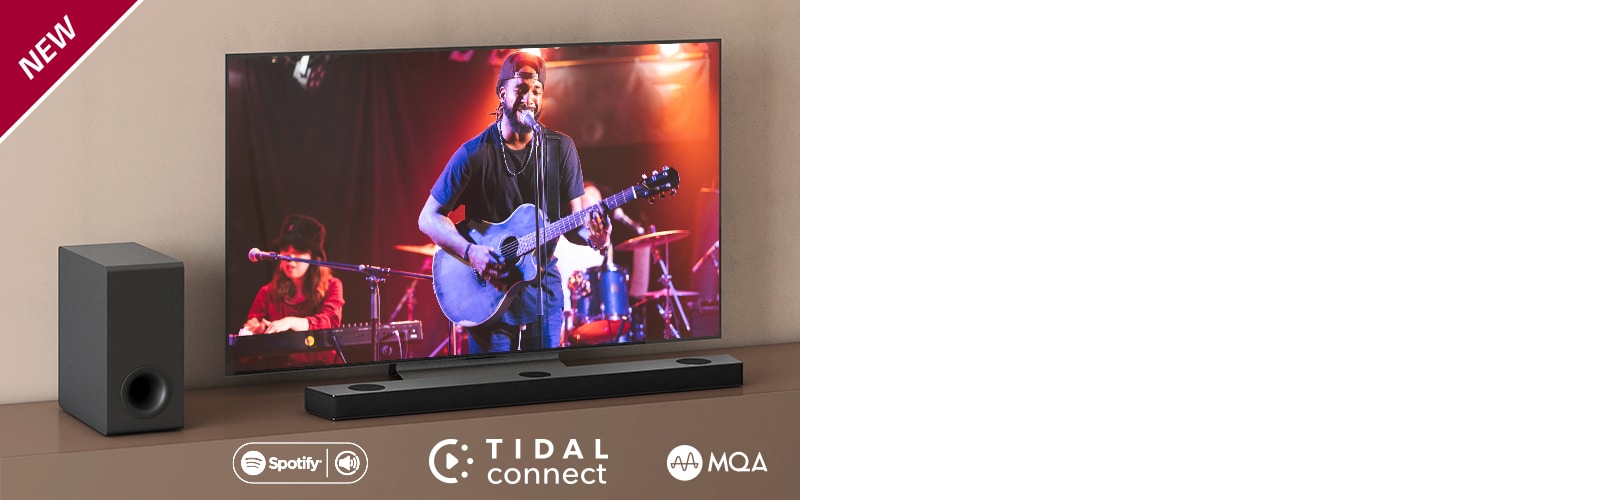 Телевизор LG стоит на серой полке, перед телевизором стоит саундбар LG S95QR. Слева от телевизора стоит сабвуфер. На телевизоре демонстрируется сцена концерта. НОВАЯ маркировка показана в верхнем левом углу.